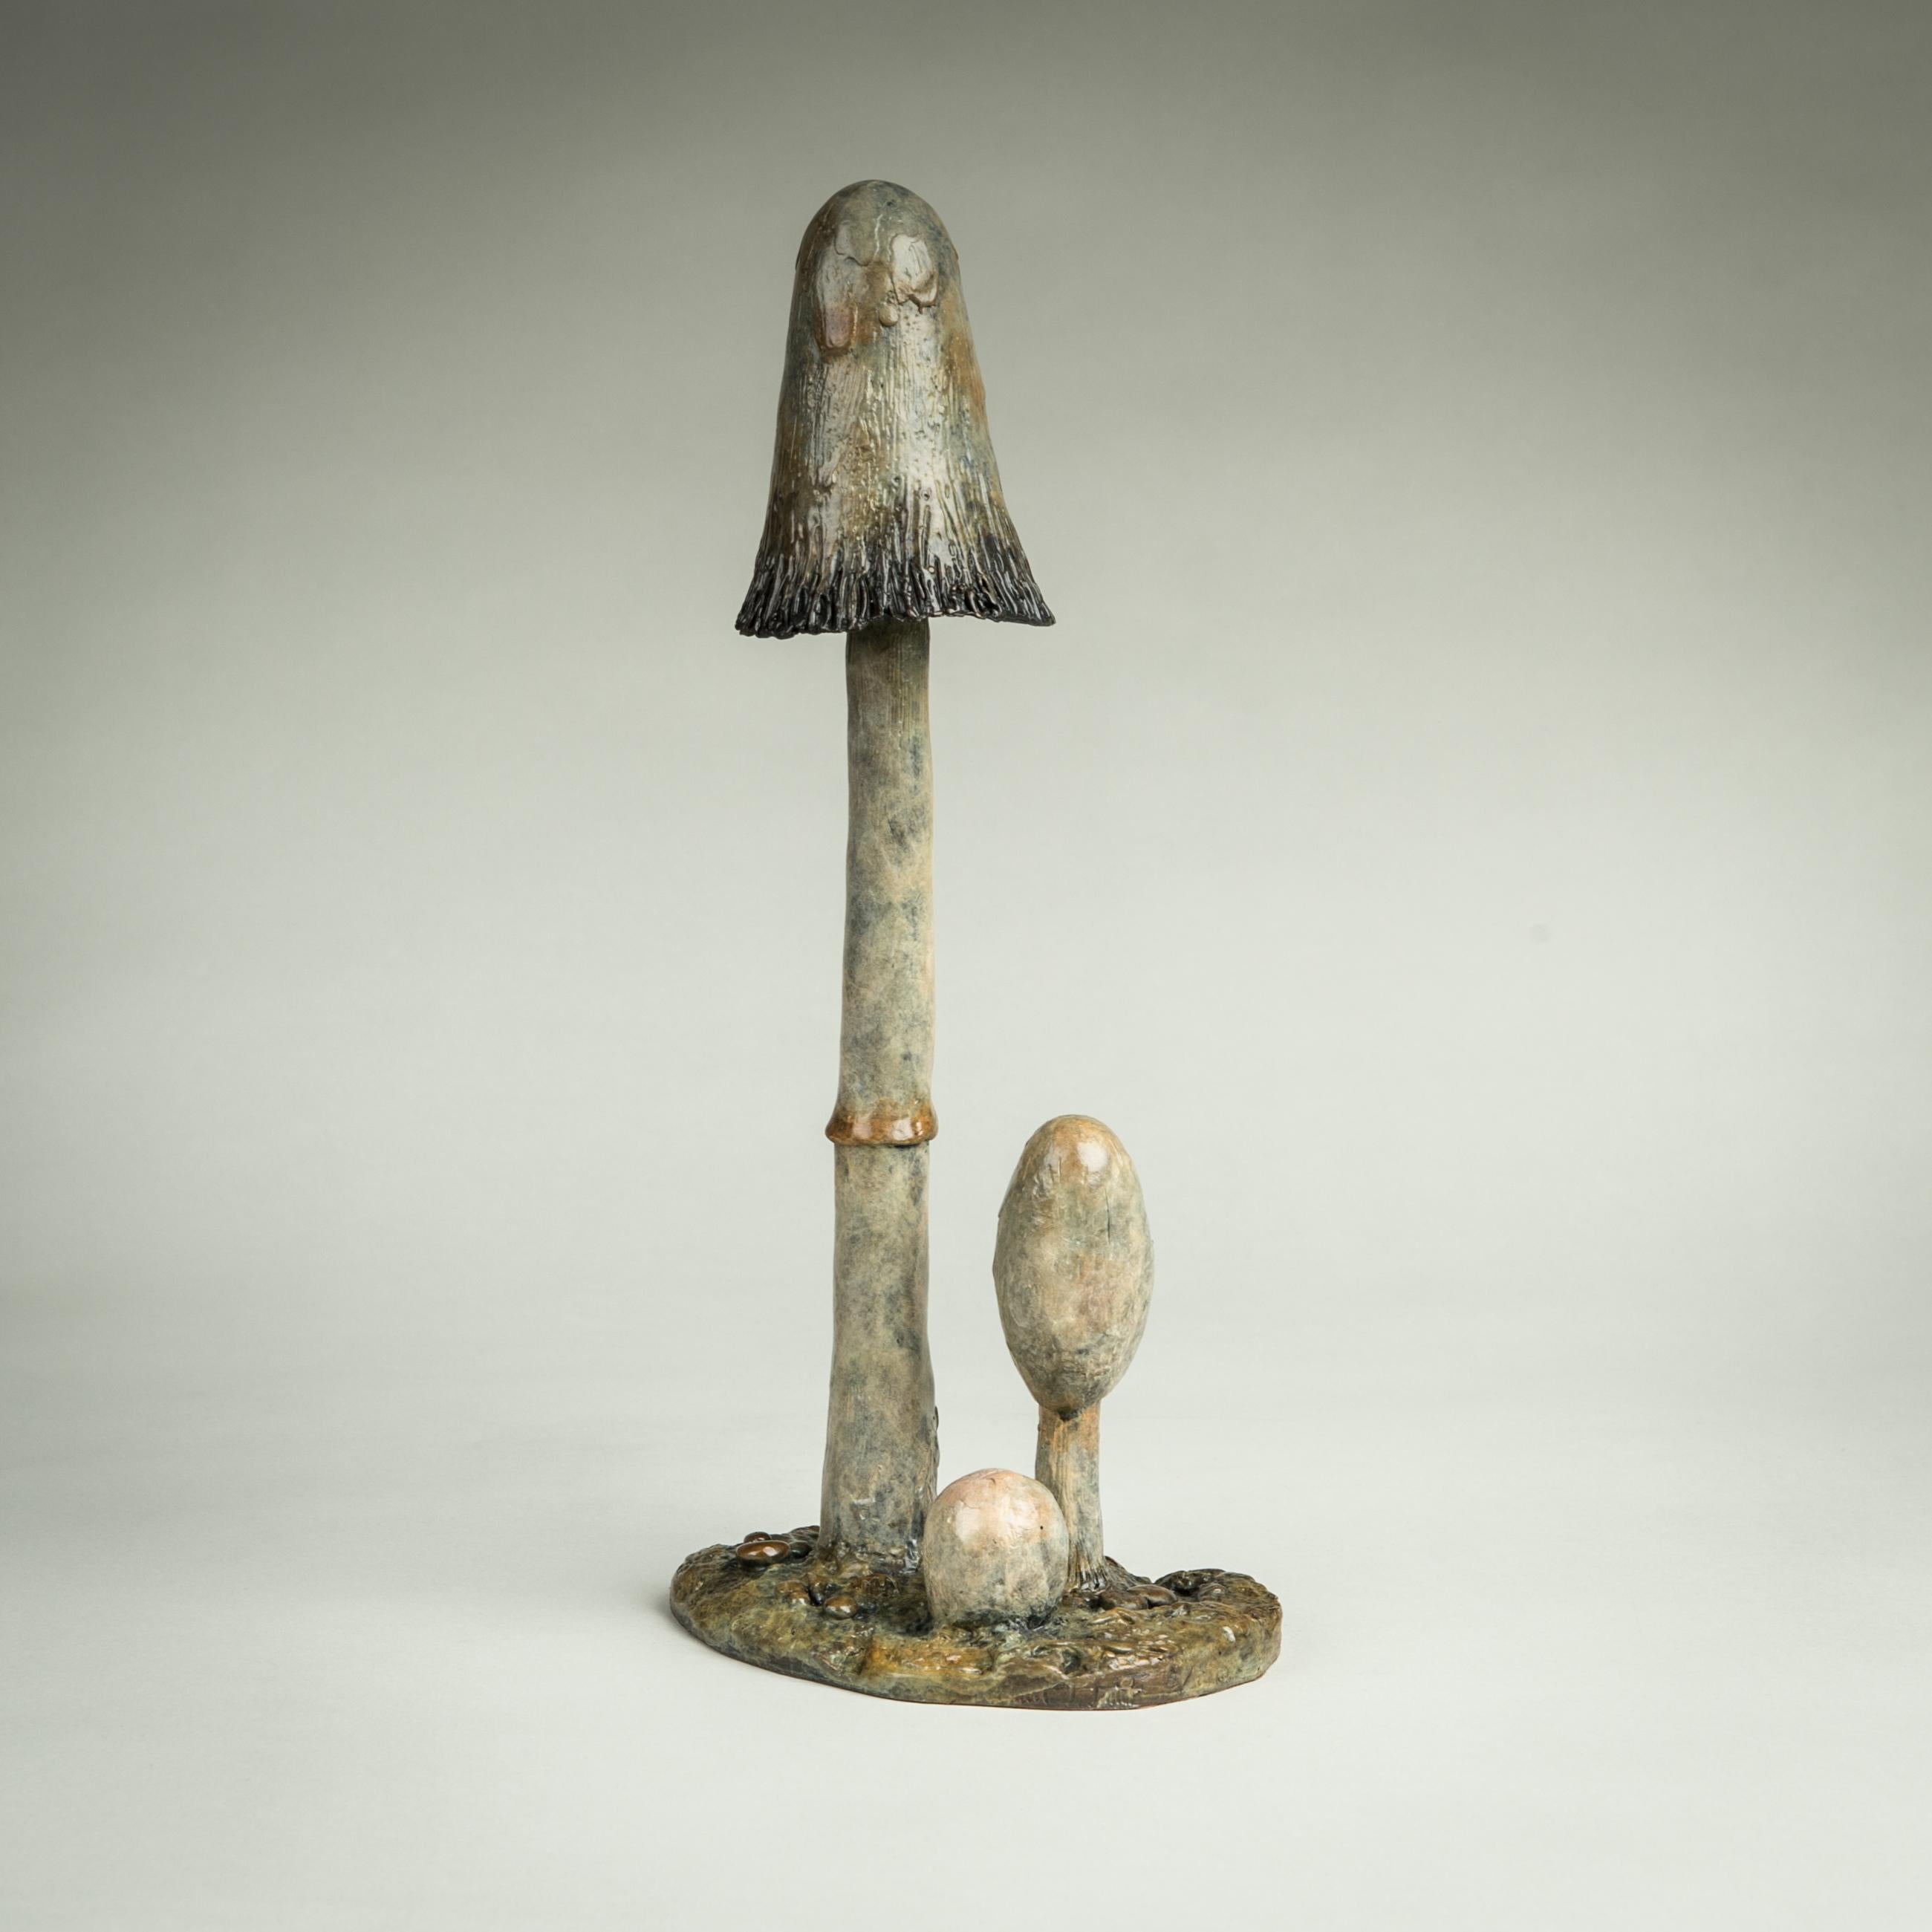 Der 'Shaggy Ink Cap Mushroom' ist eine atemberaubend elegante Bronzeskulptur eines britischen Pilzes in Nature. Die Patina, die Sie sehen, macht dieses Stück so lebensecht, wie man es heute bei Bronze selten sieht. 

Richard Smith arbeitet als